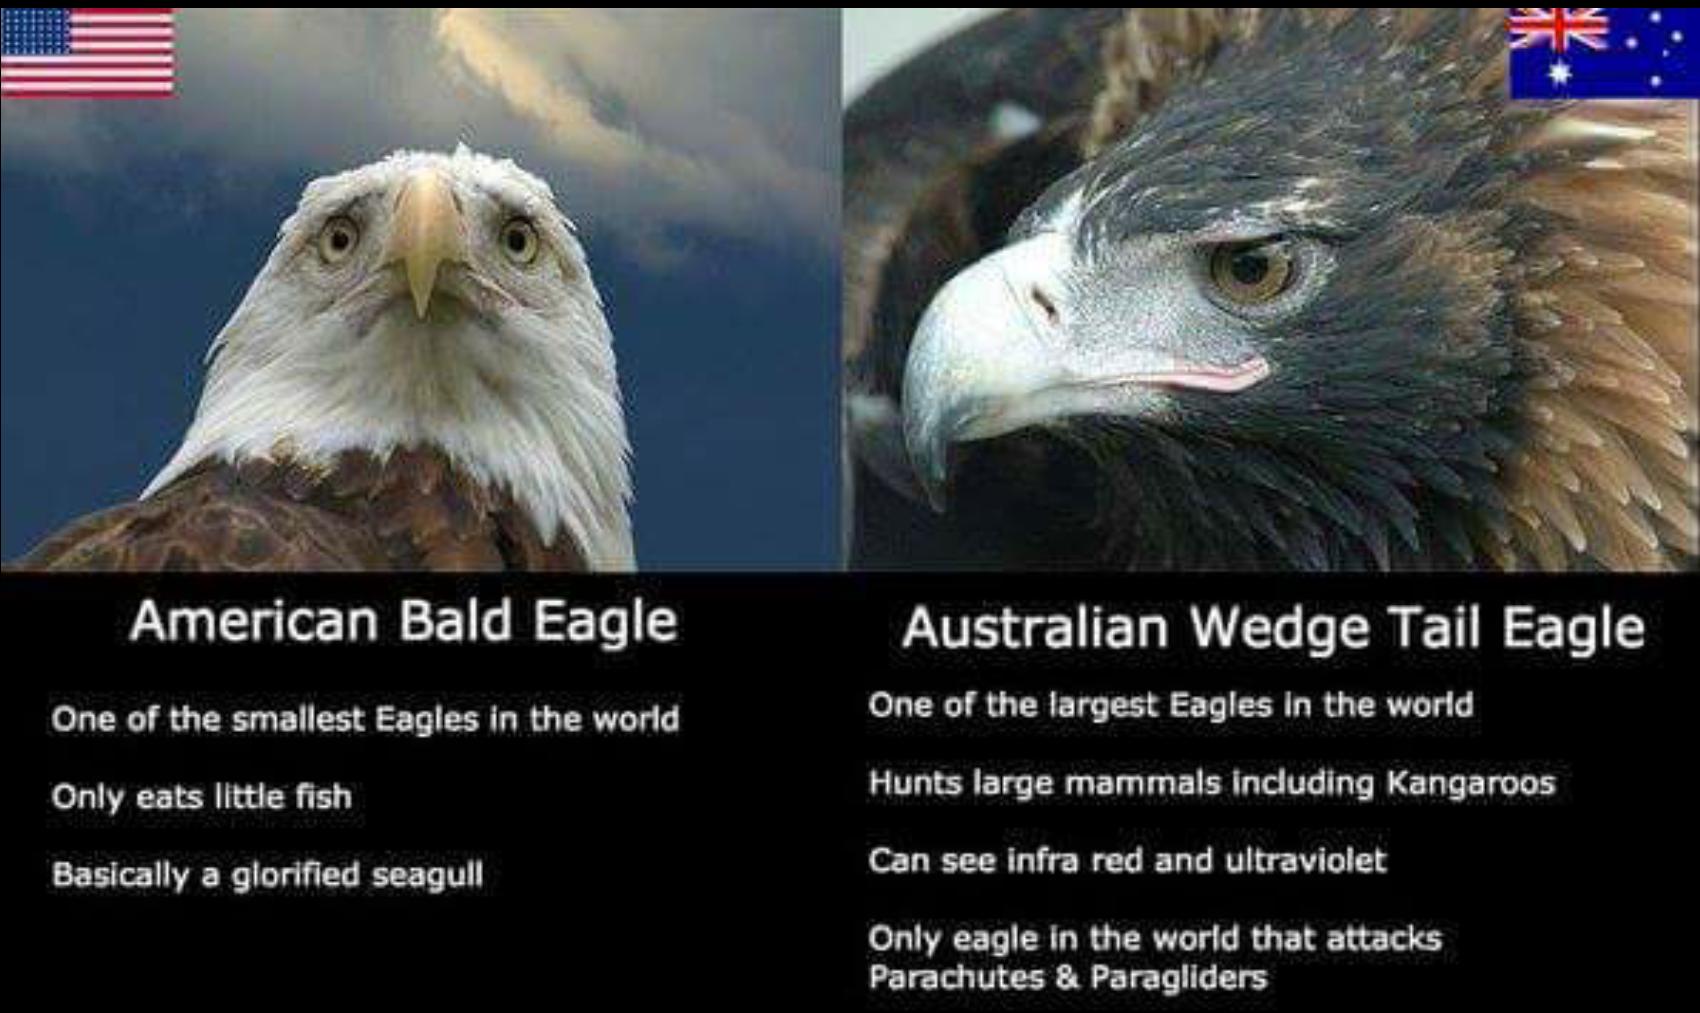 Our eagle > Your eagle